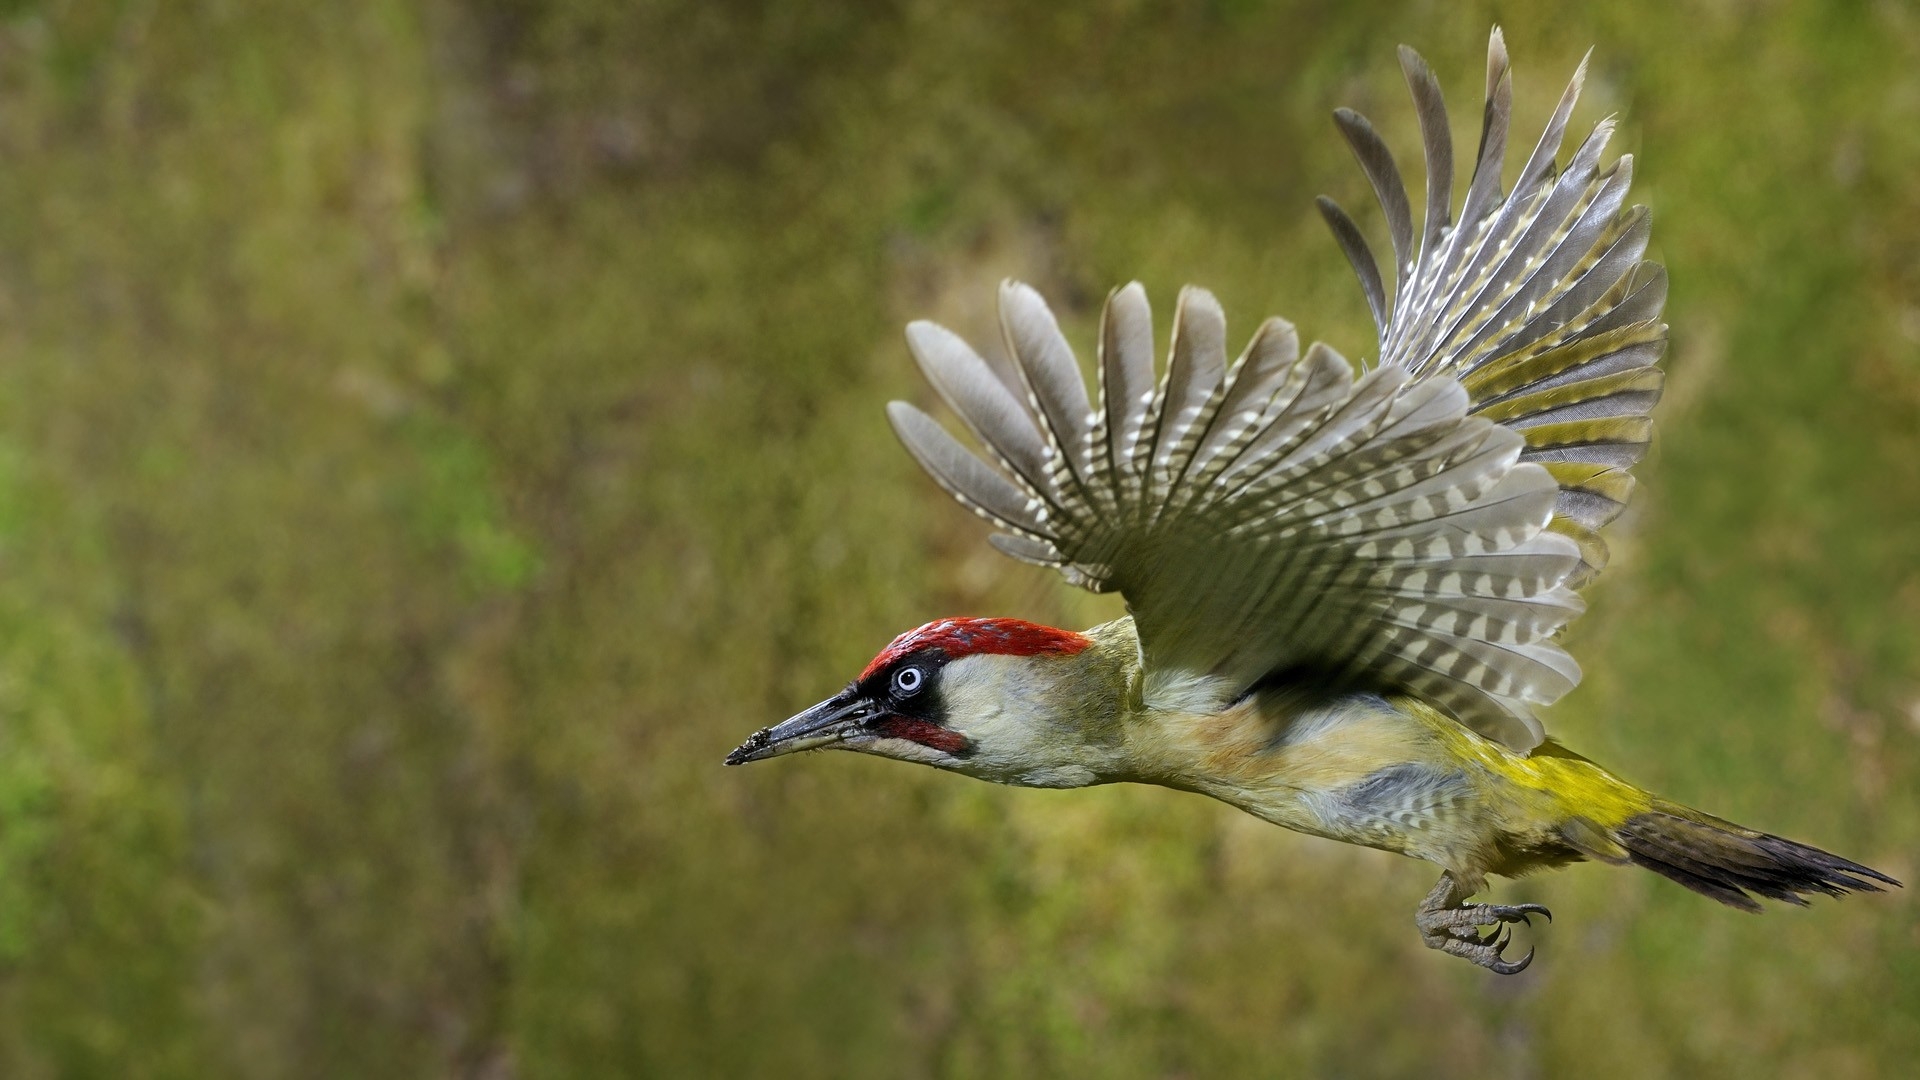 Woodpecker aħdar fit-titjira